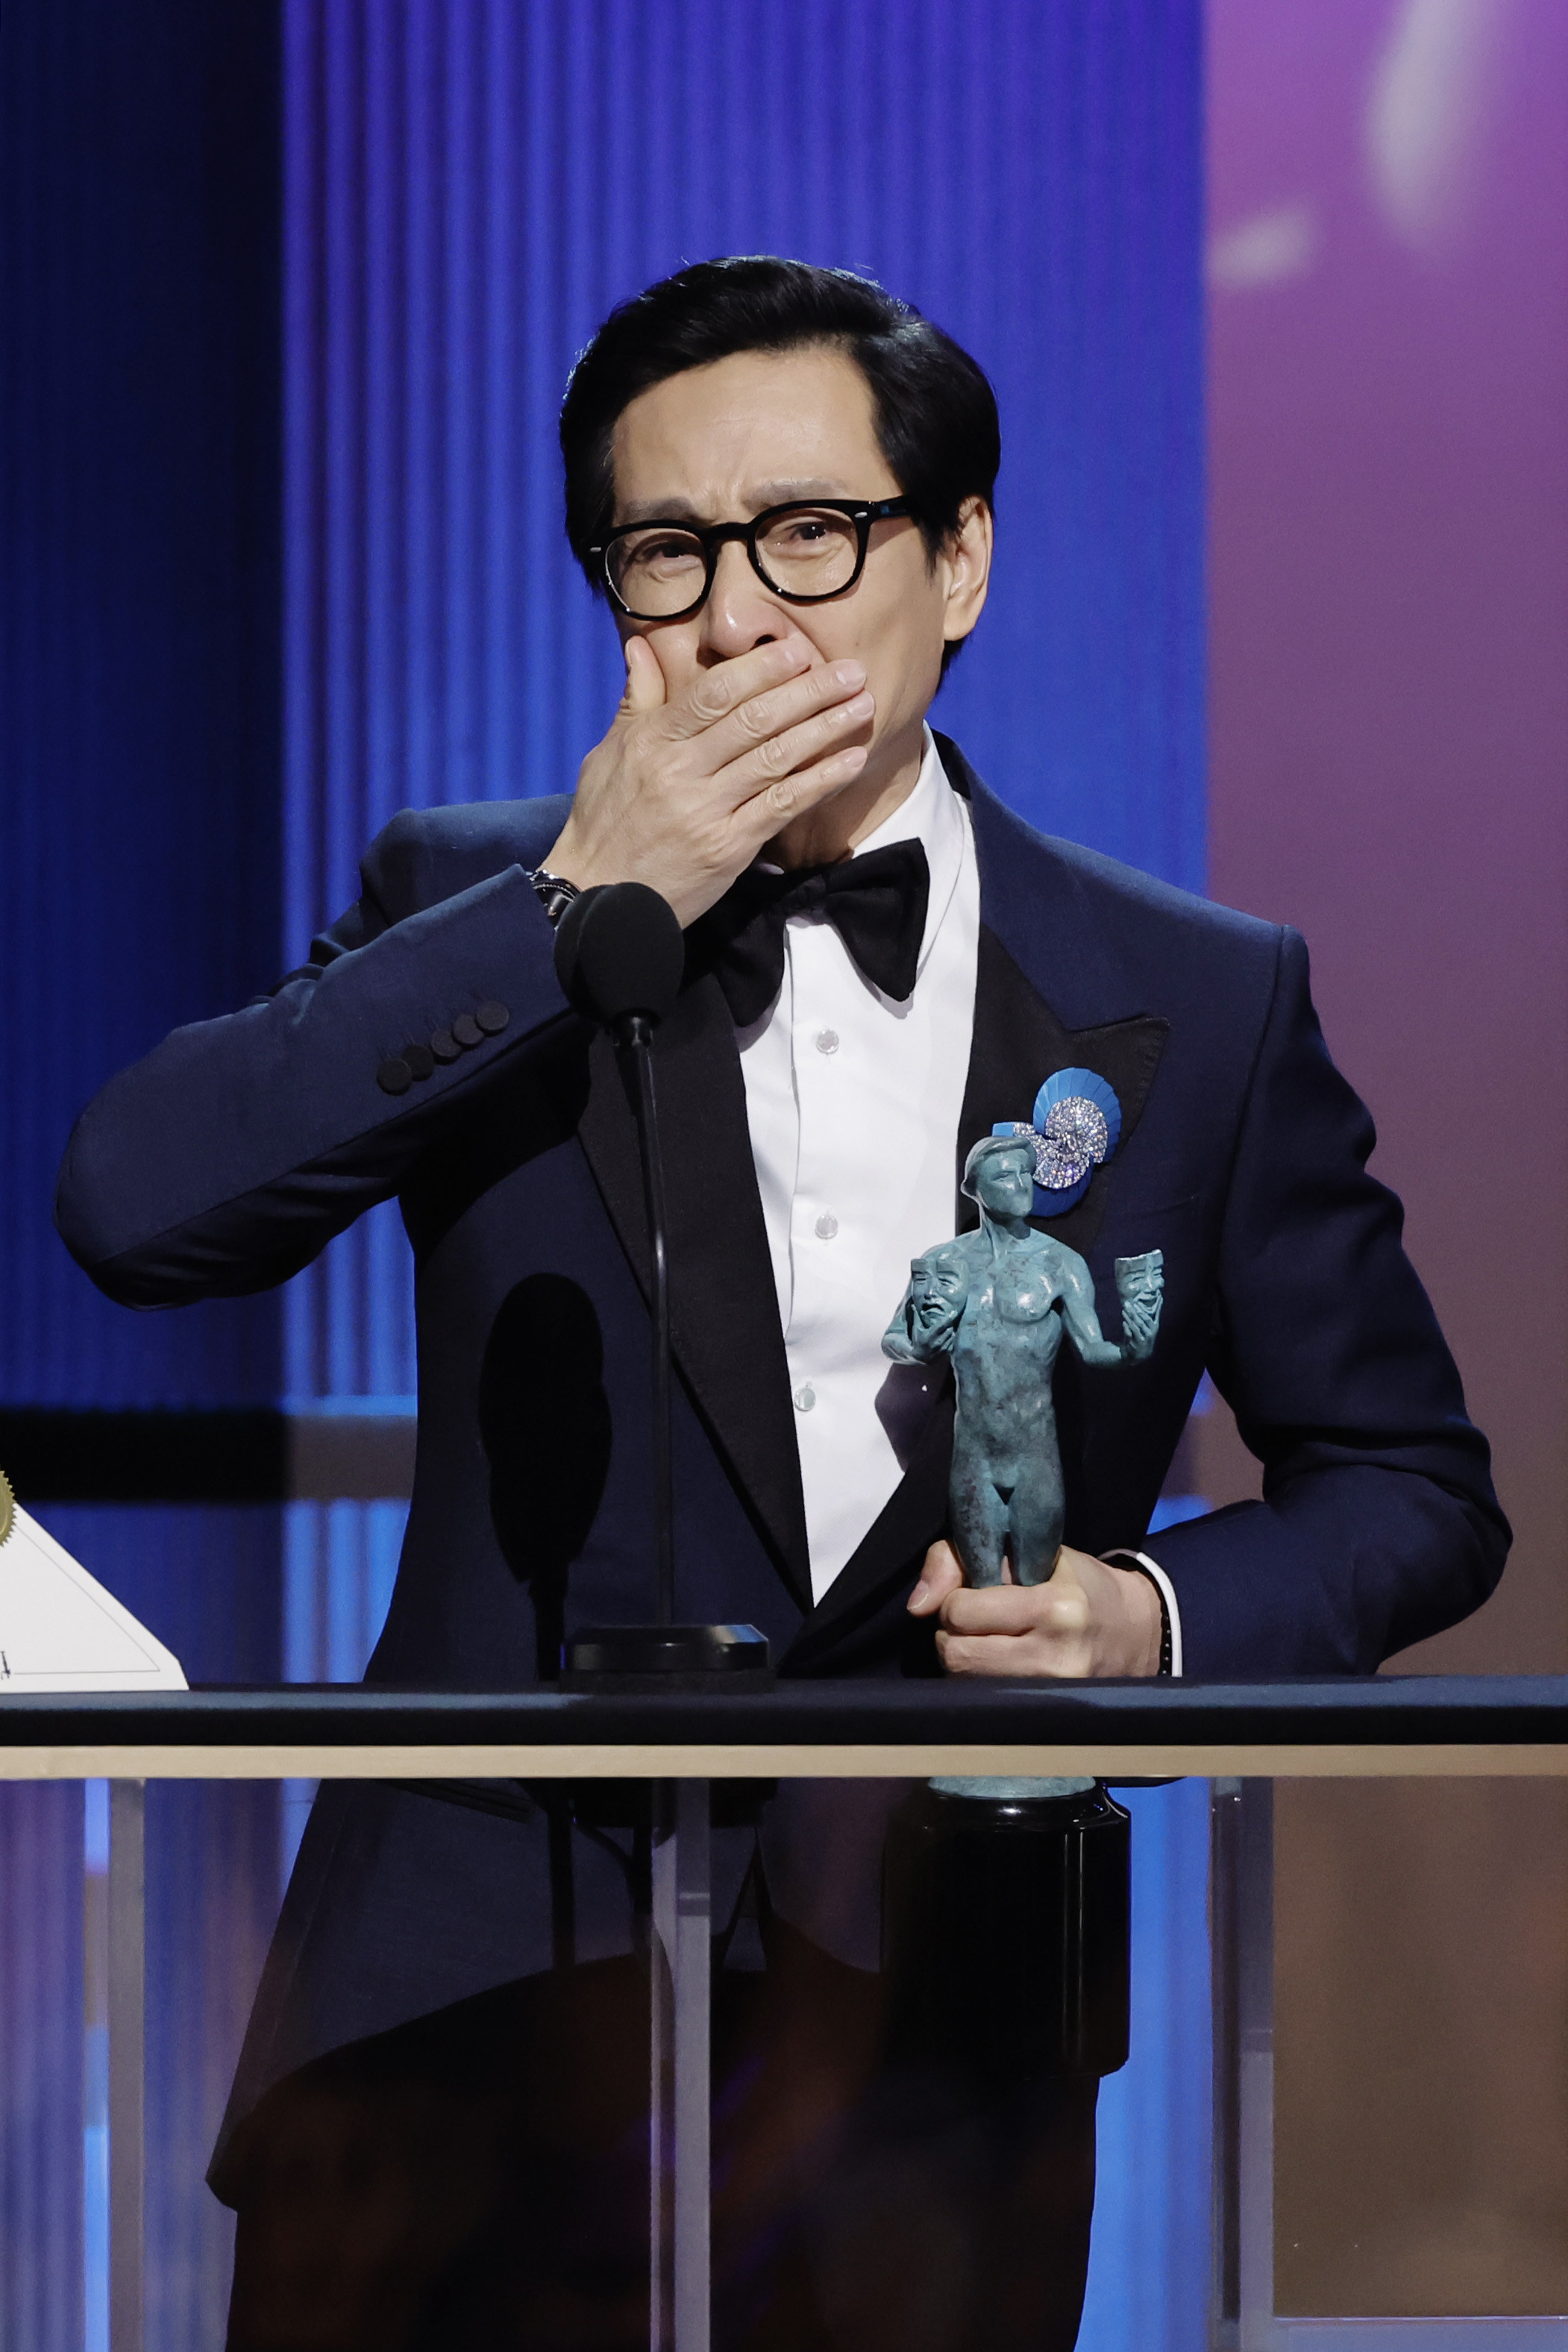 Ke Huy Quan accepting his SAG award